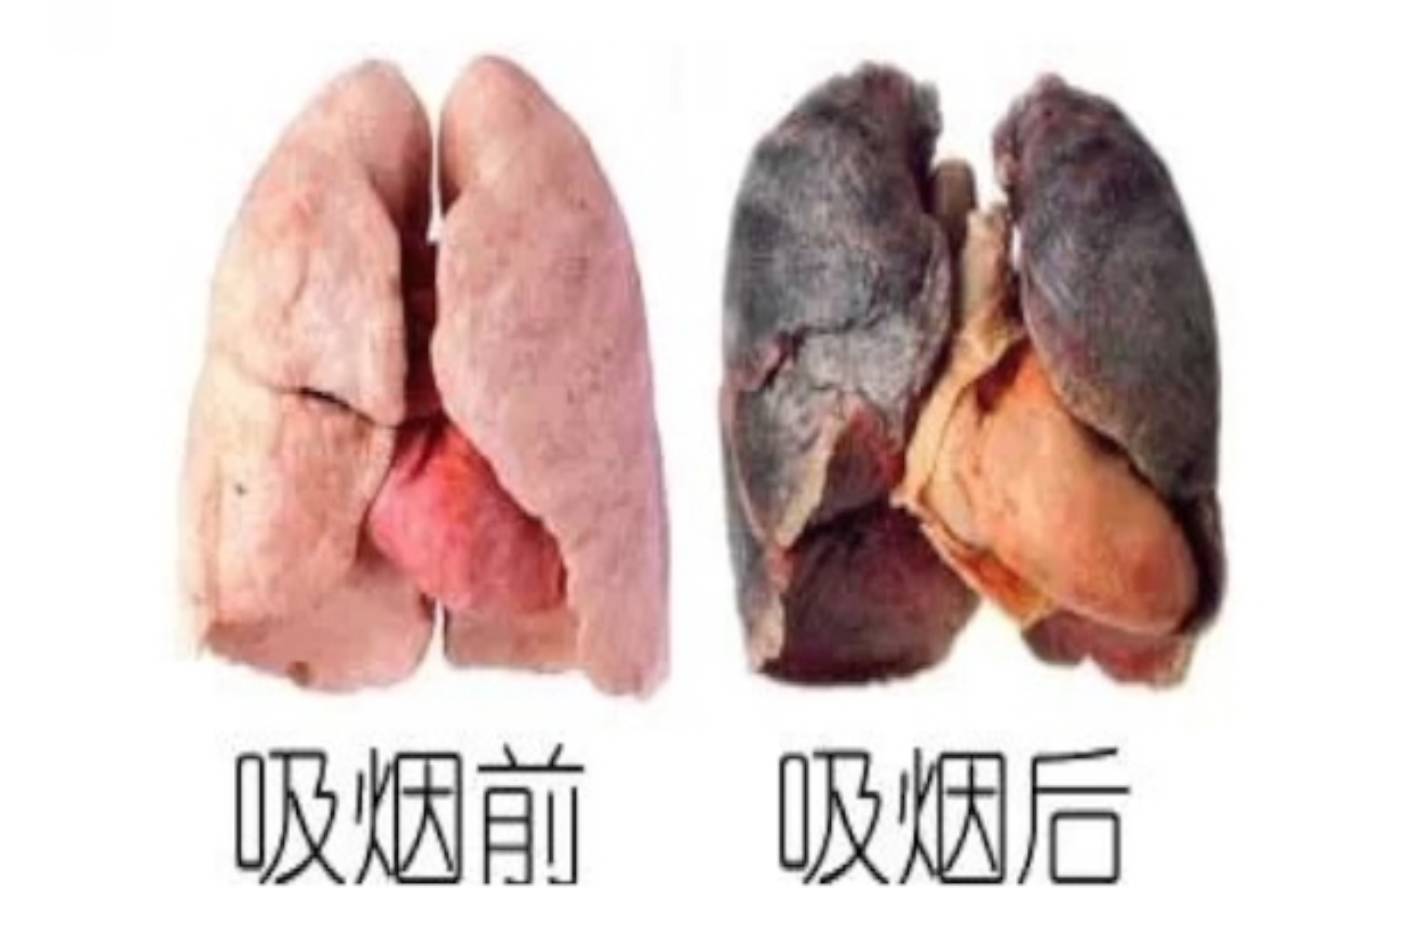 长期抽烟以及被动吸烟的人,导致颗粒吸入肺部,造成肺部炎症,进而带来